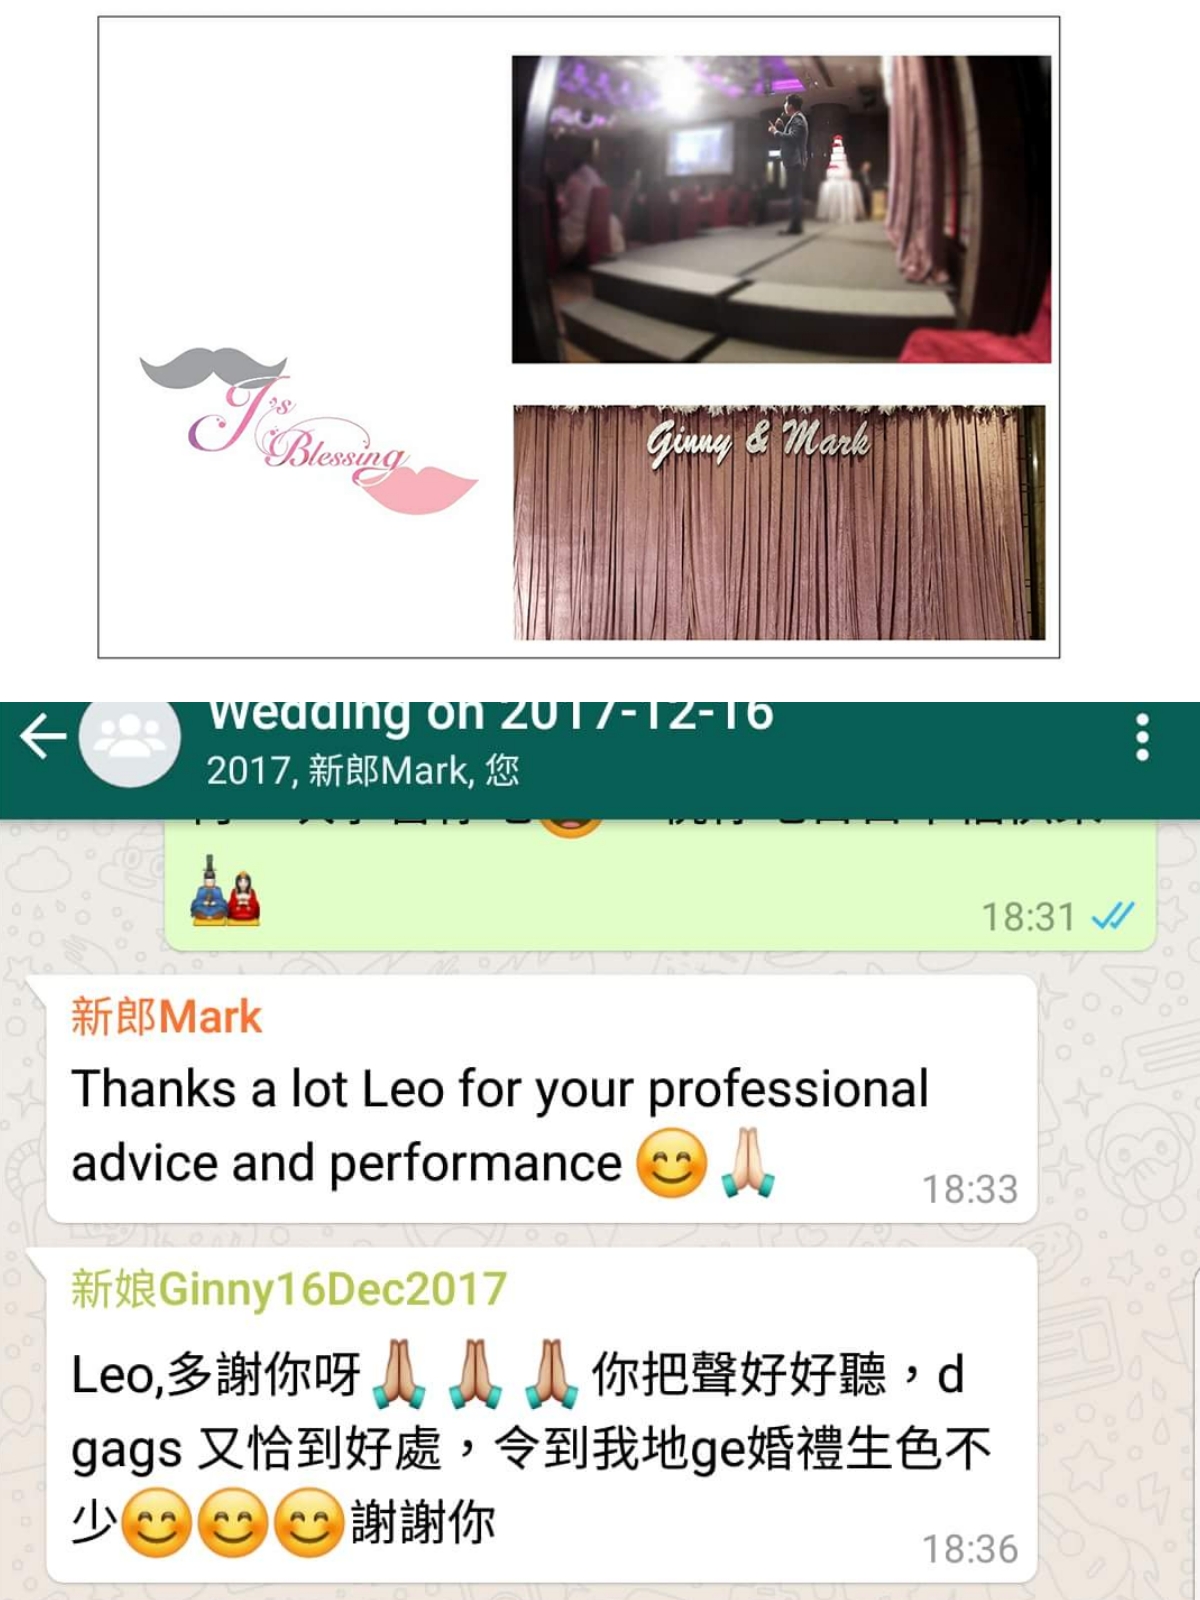 婚禮司儀 Mc Leo ho司儀工作紀錄: 婚禮司儀 Wedding MC Outjob (MC Leo) (16, Dec 2017 @ #帝京酒店喜酌堂)